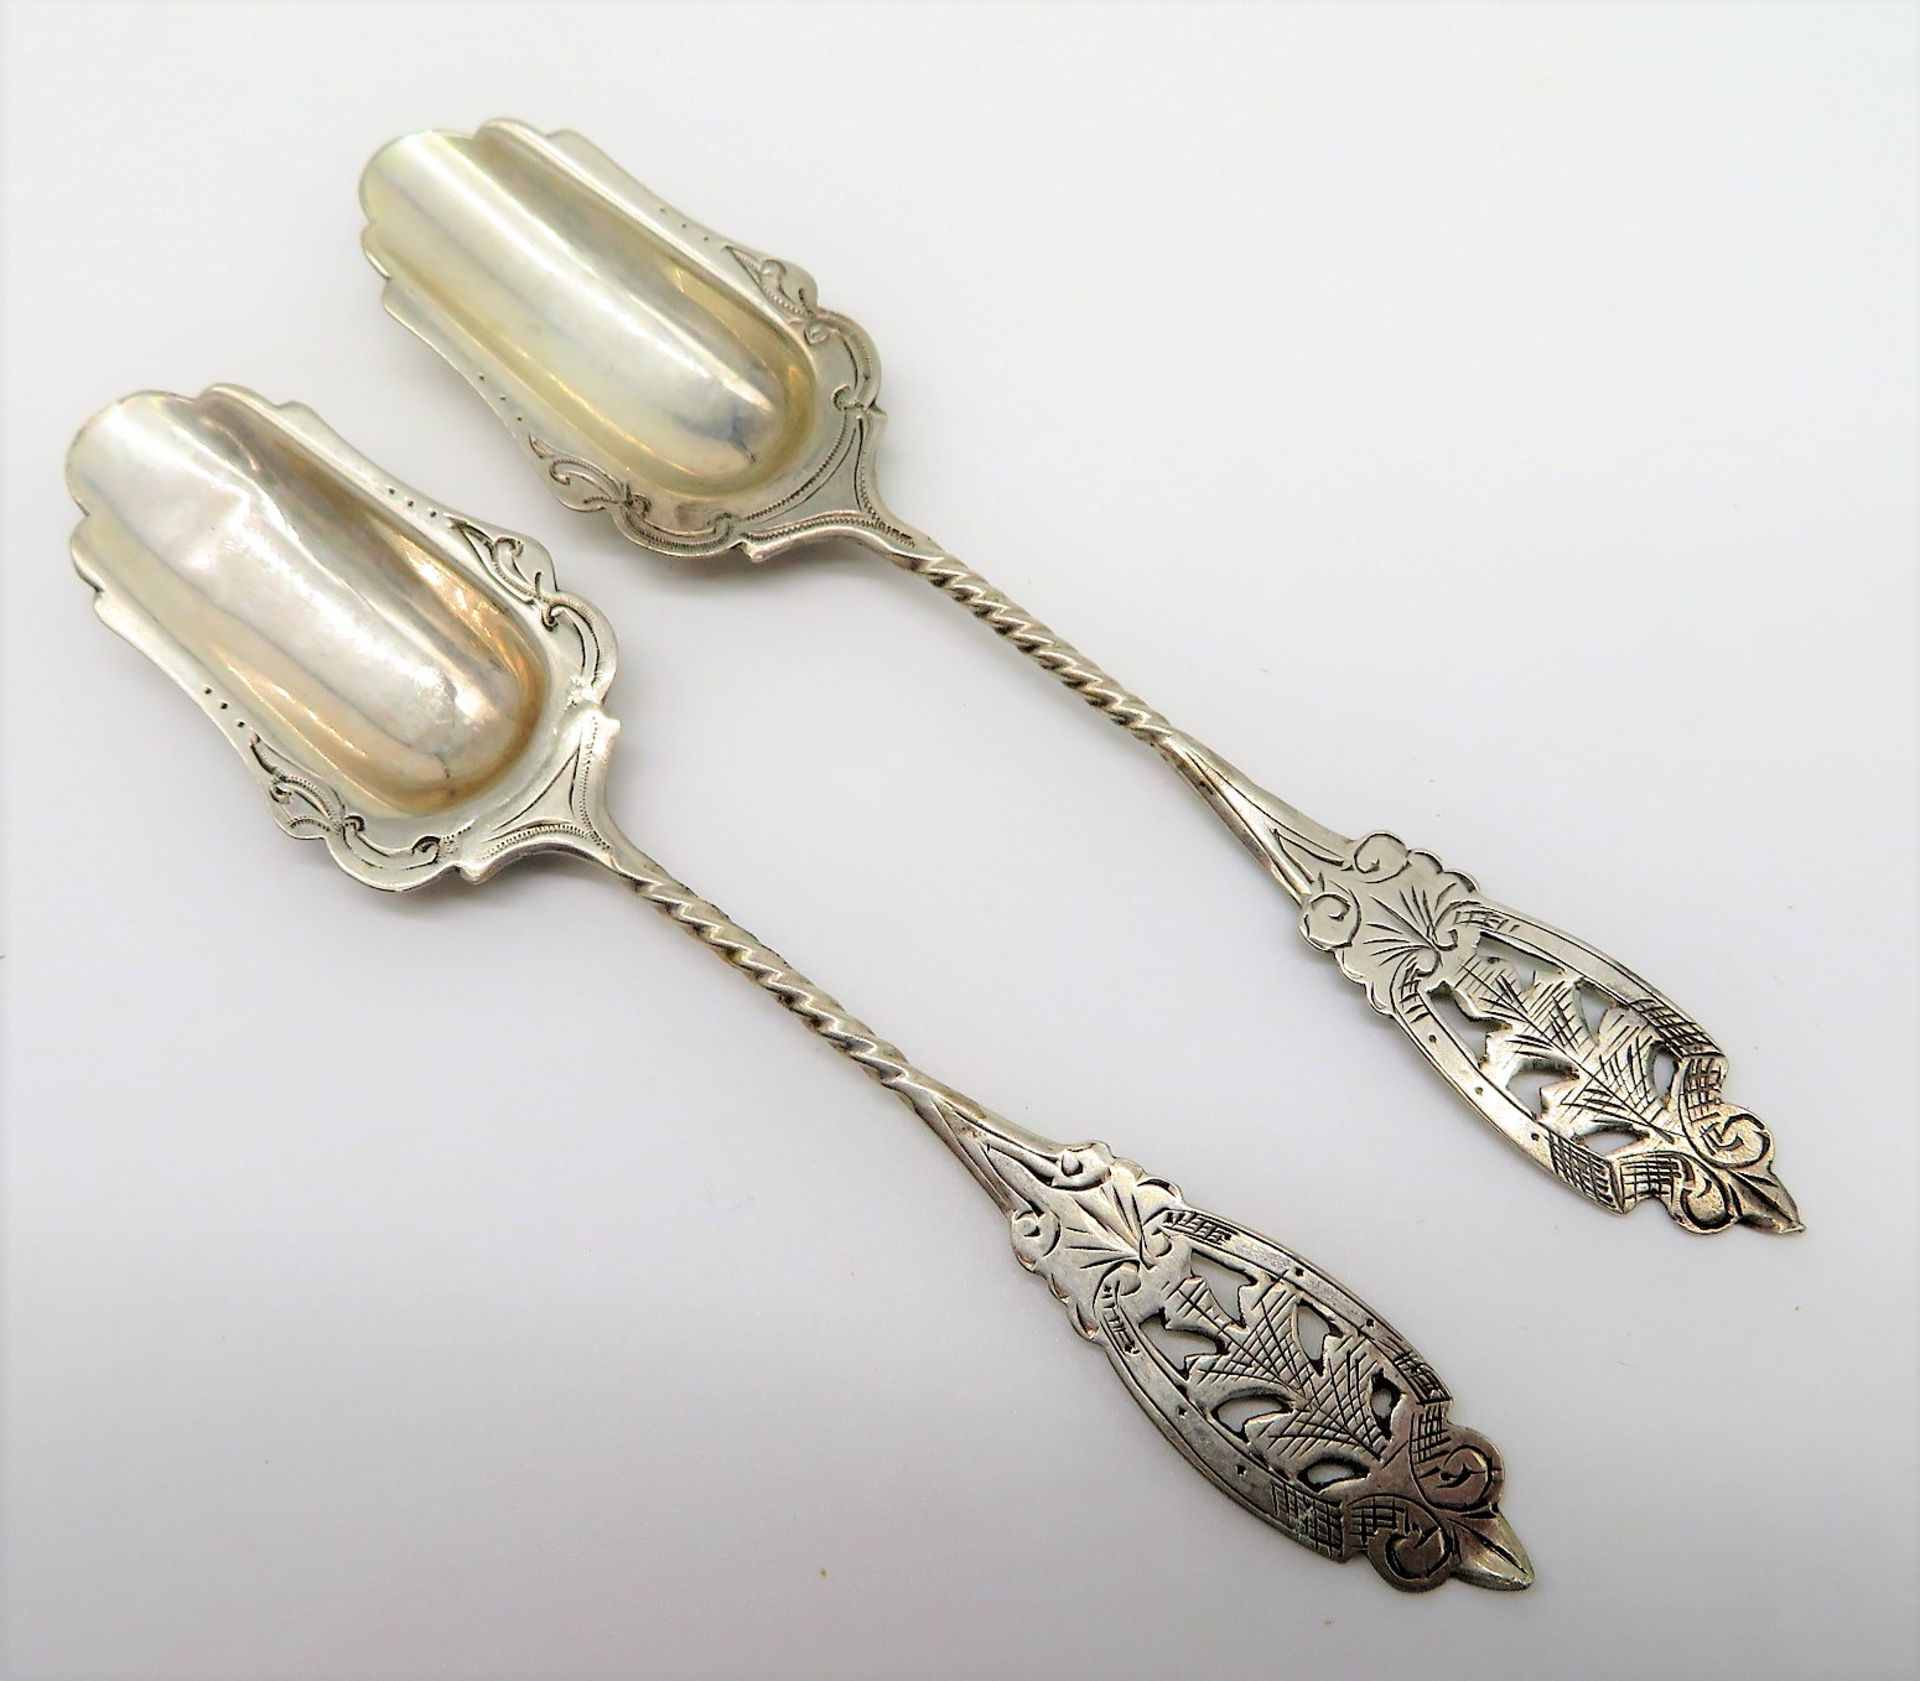 2 Zuckerschaufeln, um 1900, 835er Silber, gepunzt, 20 g, l 13 cm.